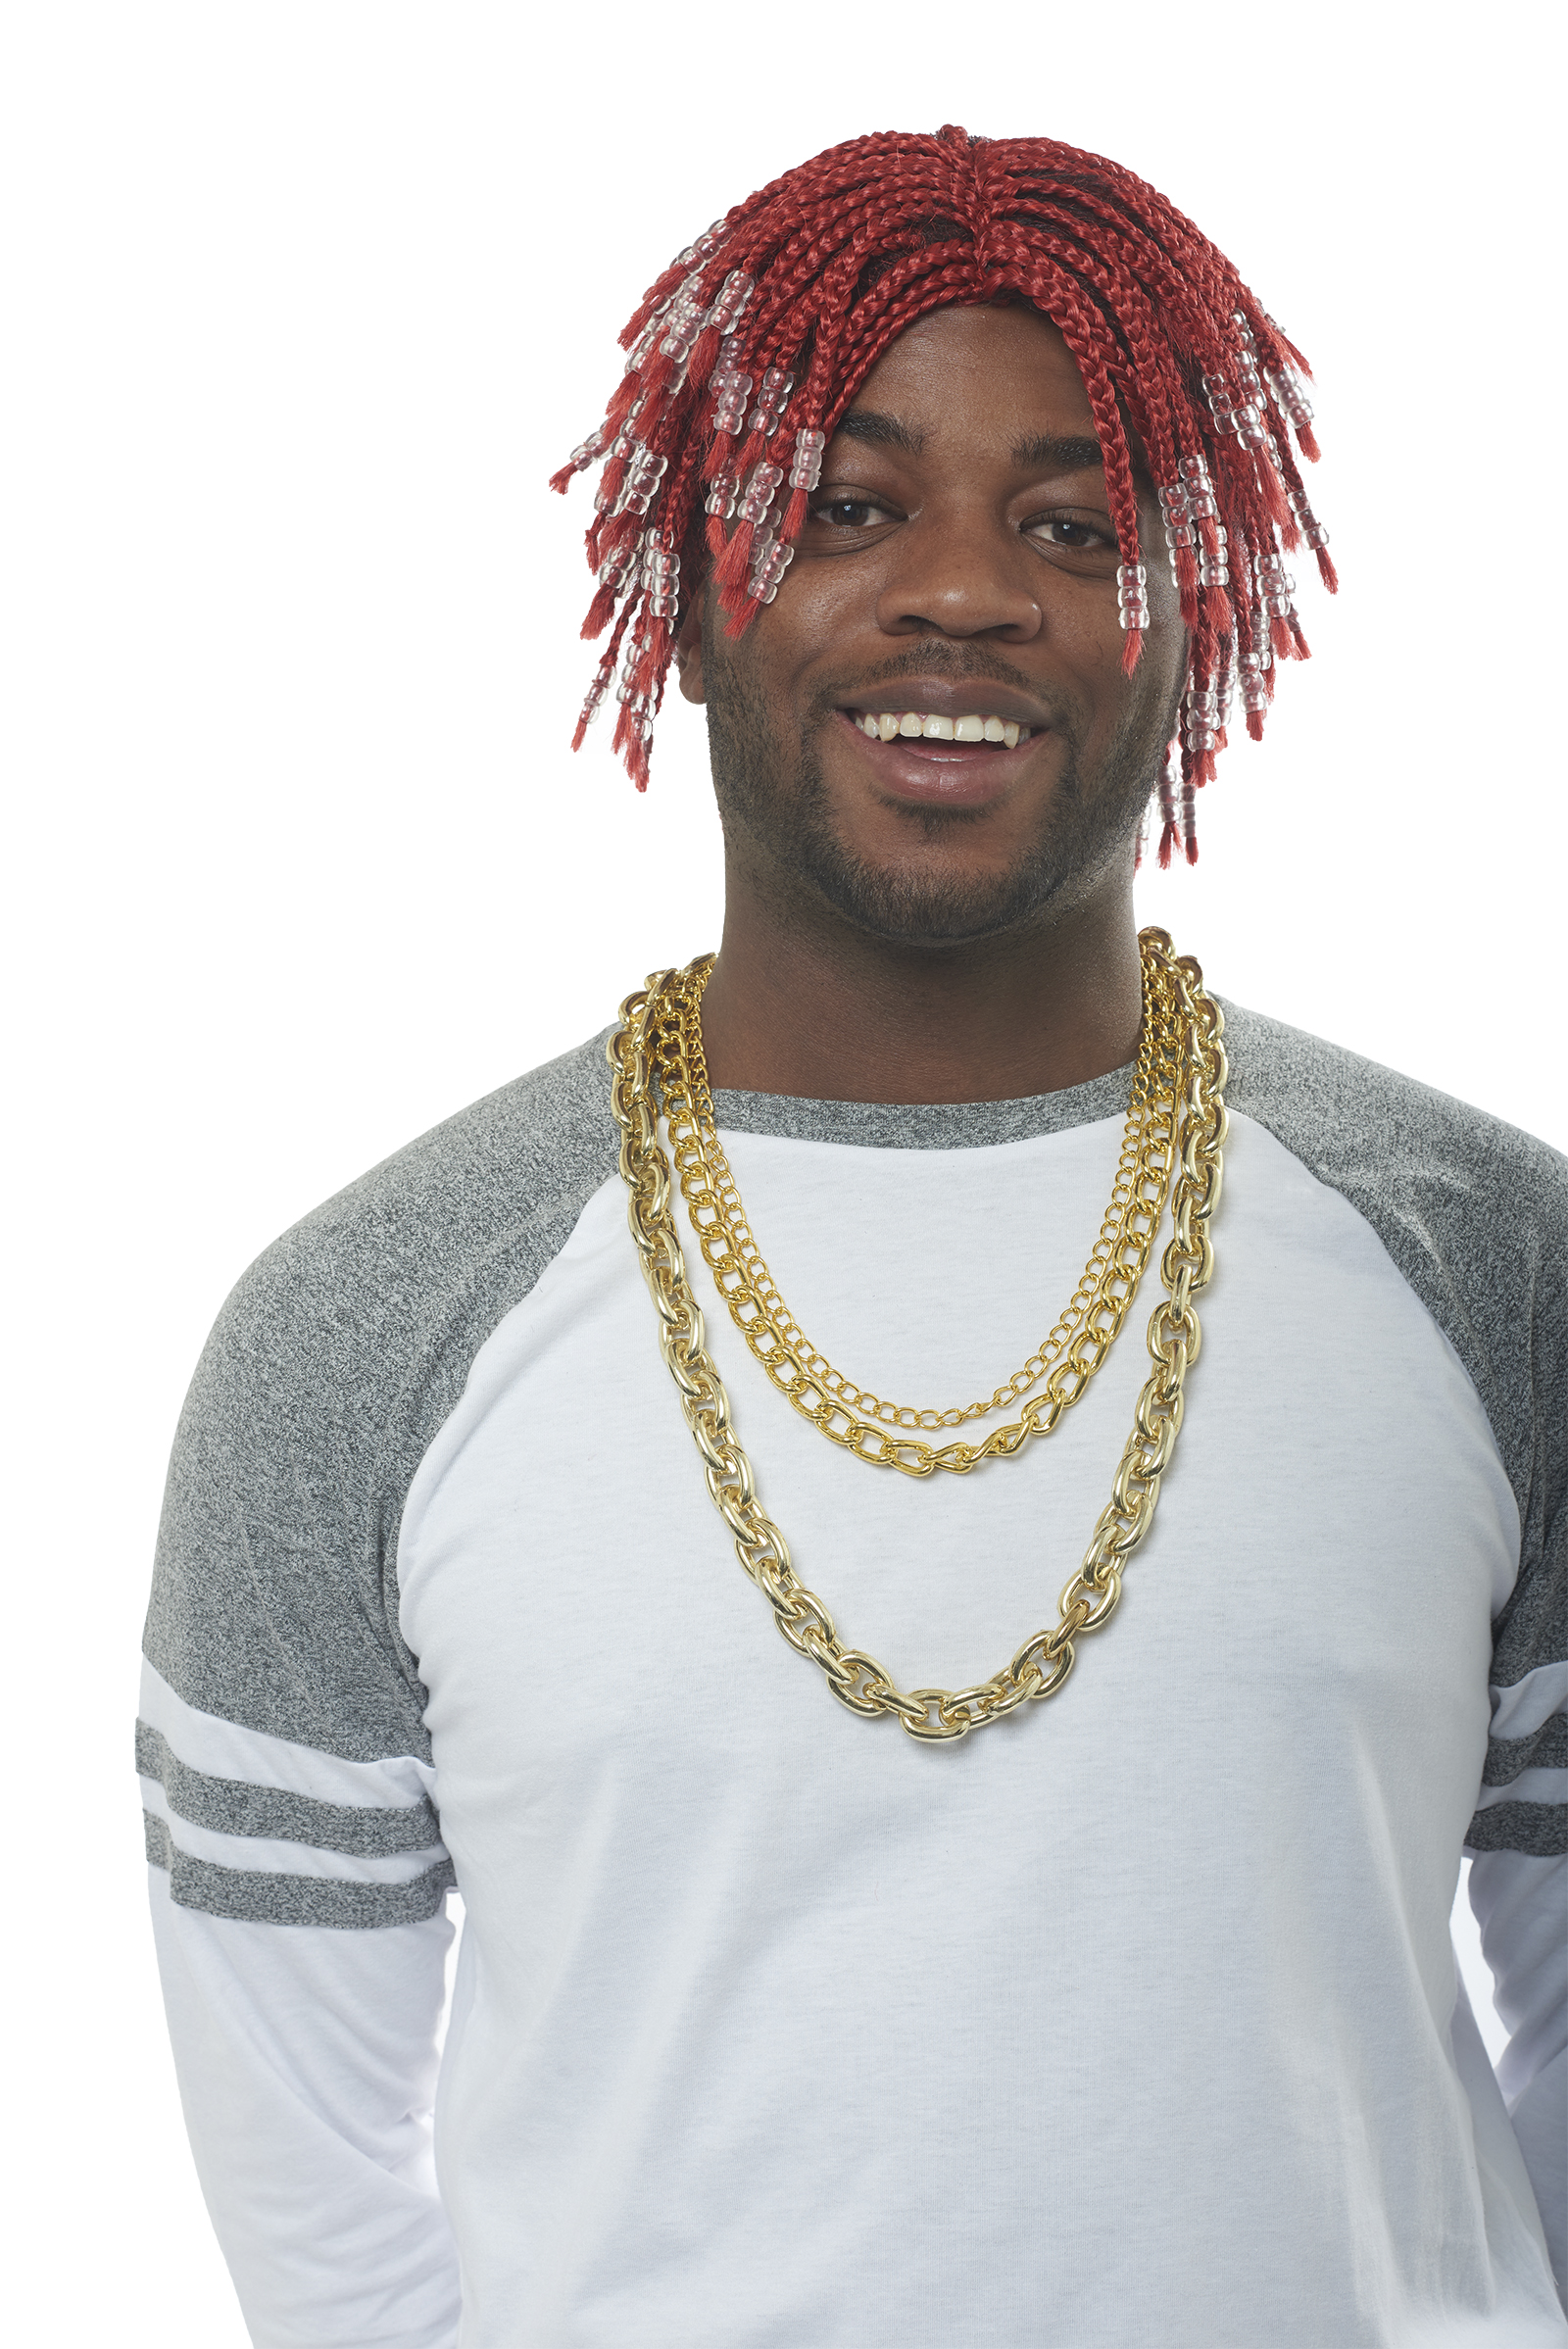 Buy Red Rapper Adult Wig w Braids n Beads - Cappel's